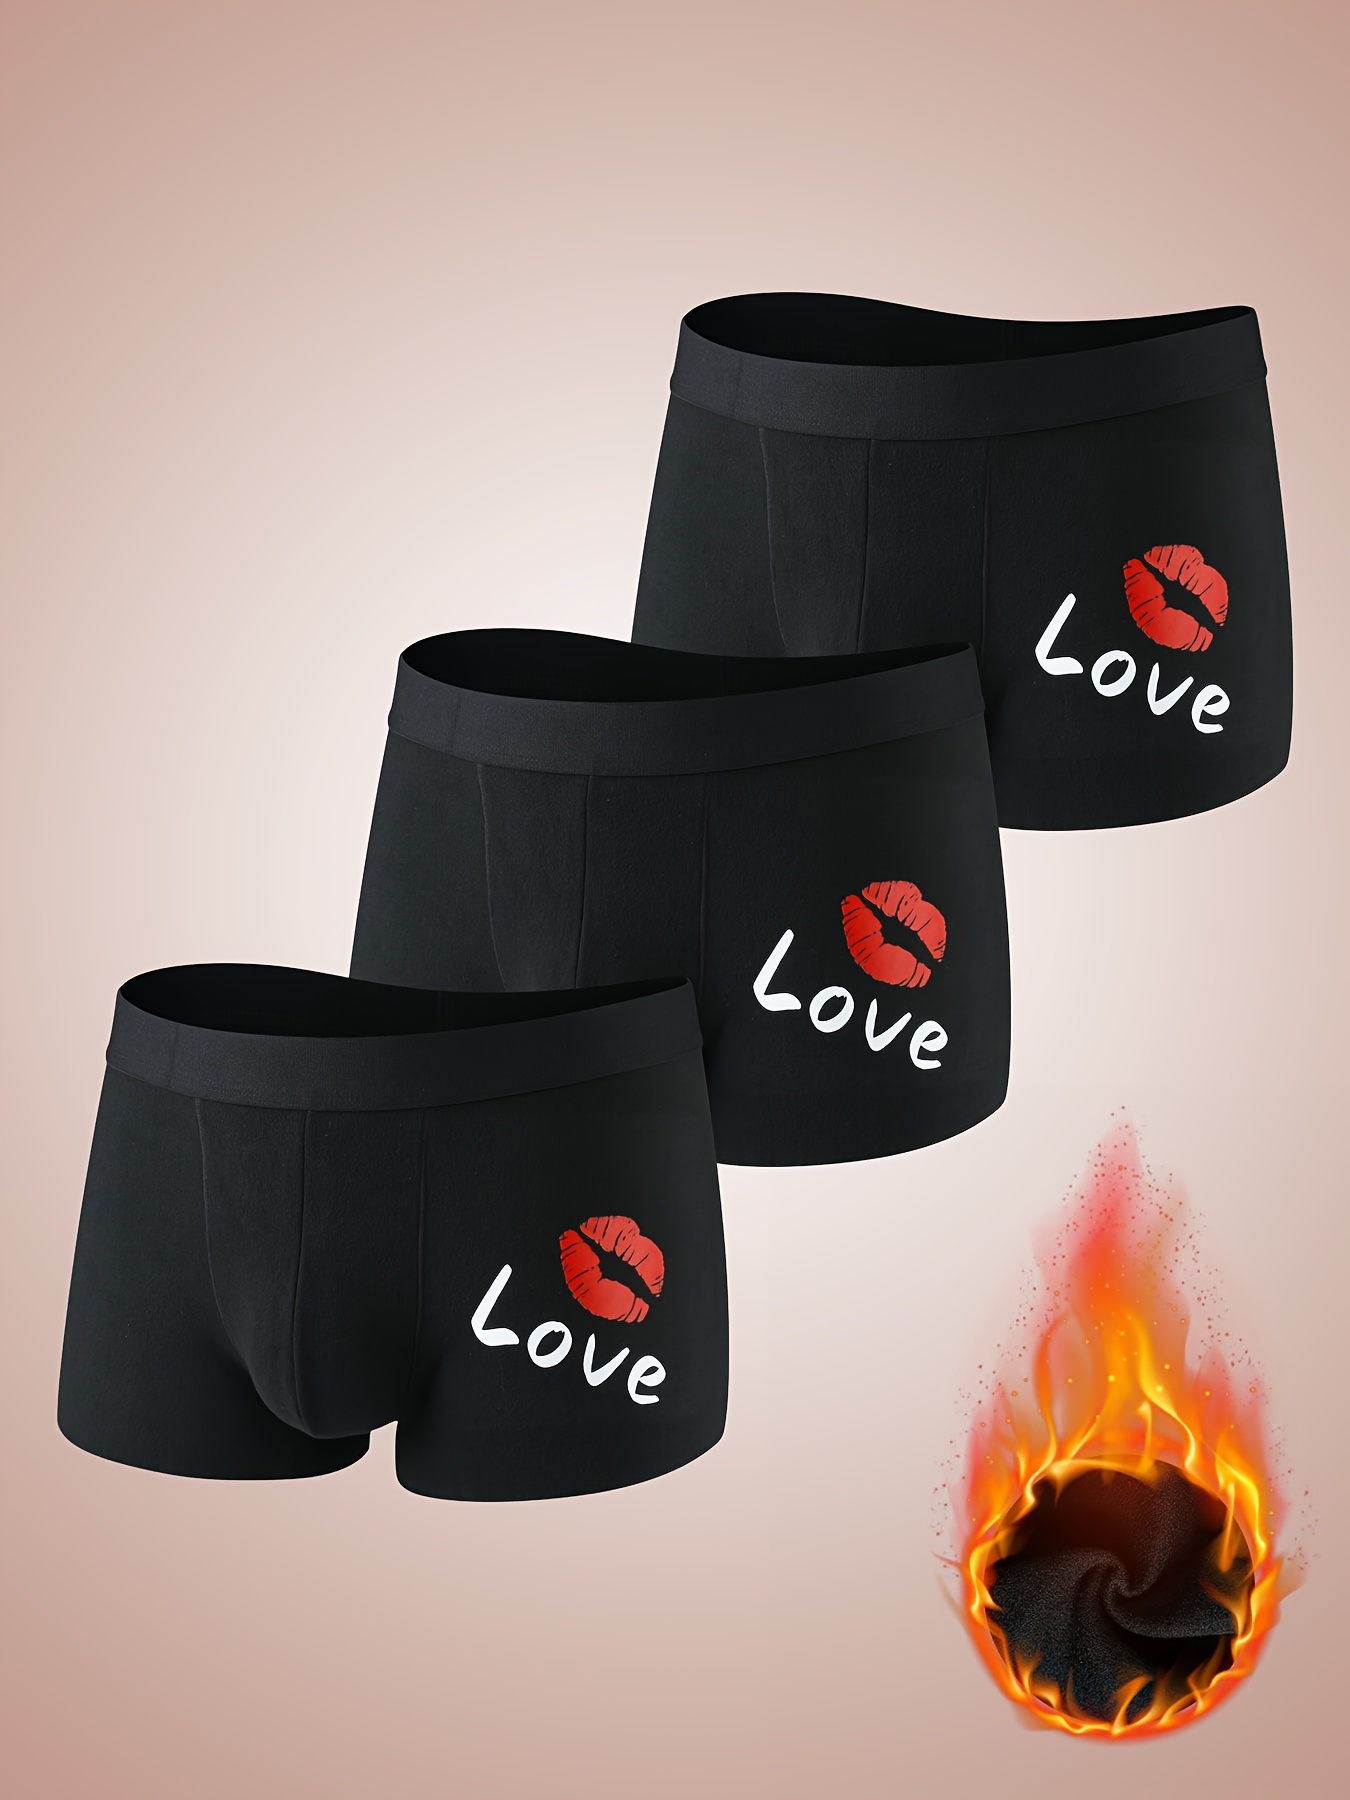 Caution Choking Hazard Men's Black Boxer Briefs | Funny Valentines Day Gift  For him | Valentine's Day Underwear Undies